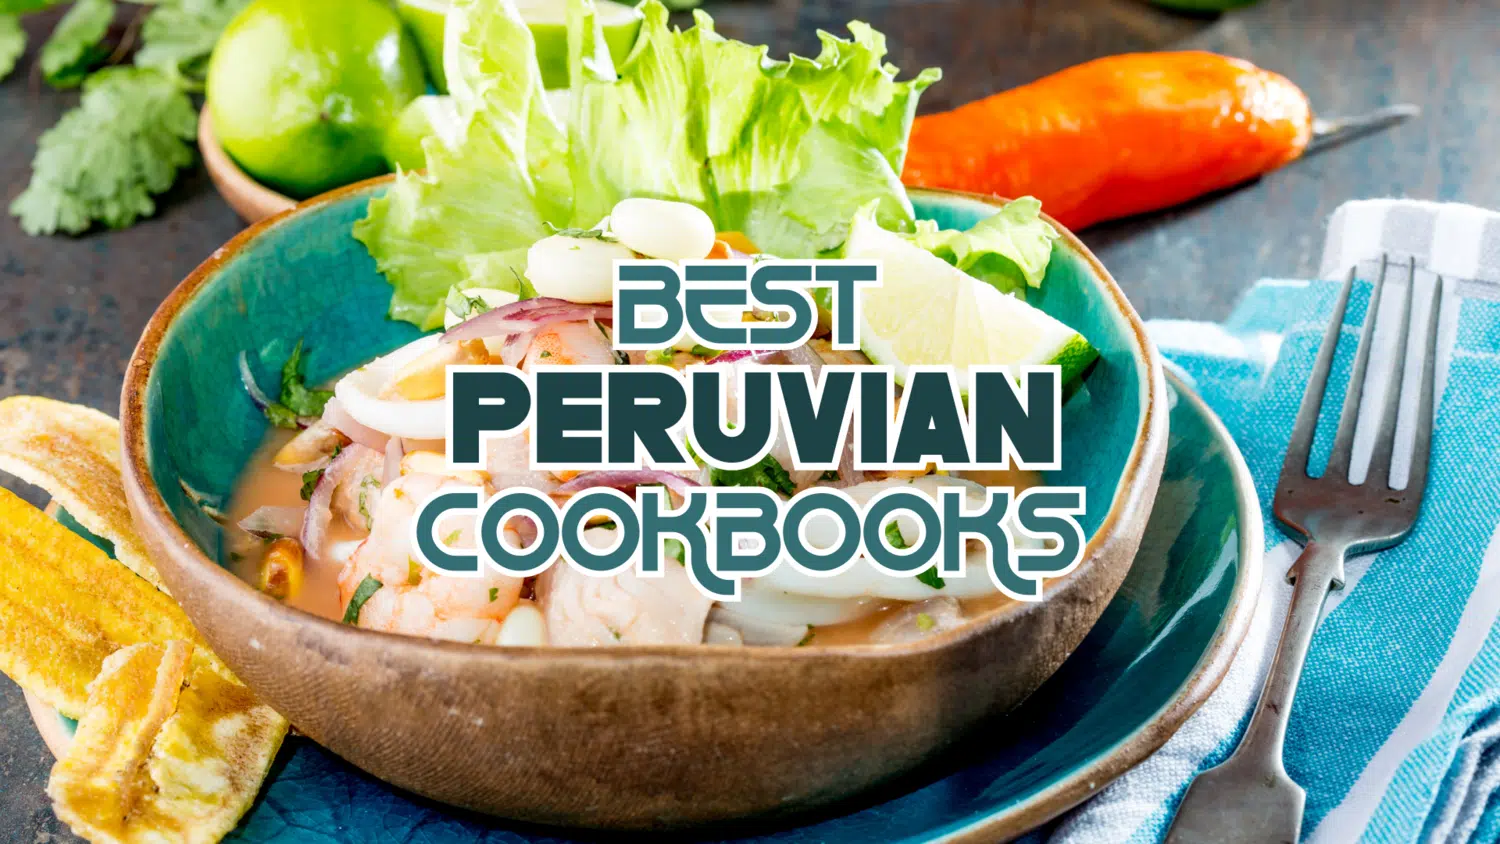 Best Peruvian Cookbooks